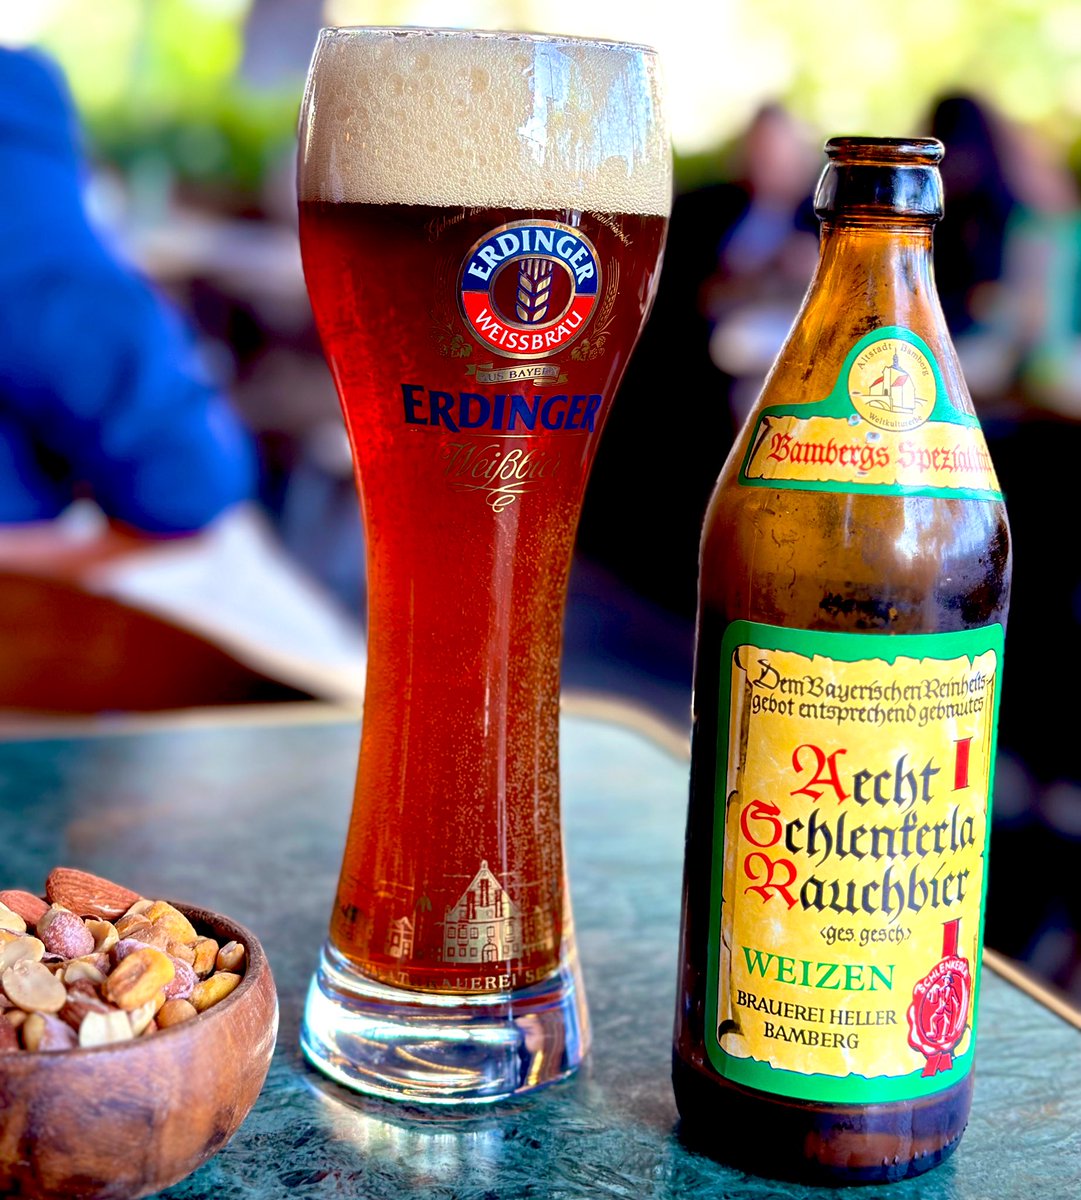 Alman birası 🍺 
aecht schlenkerla rauchbier
#germanbeer #beer